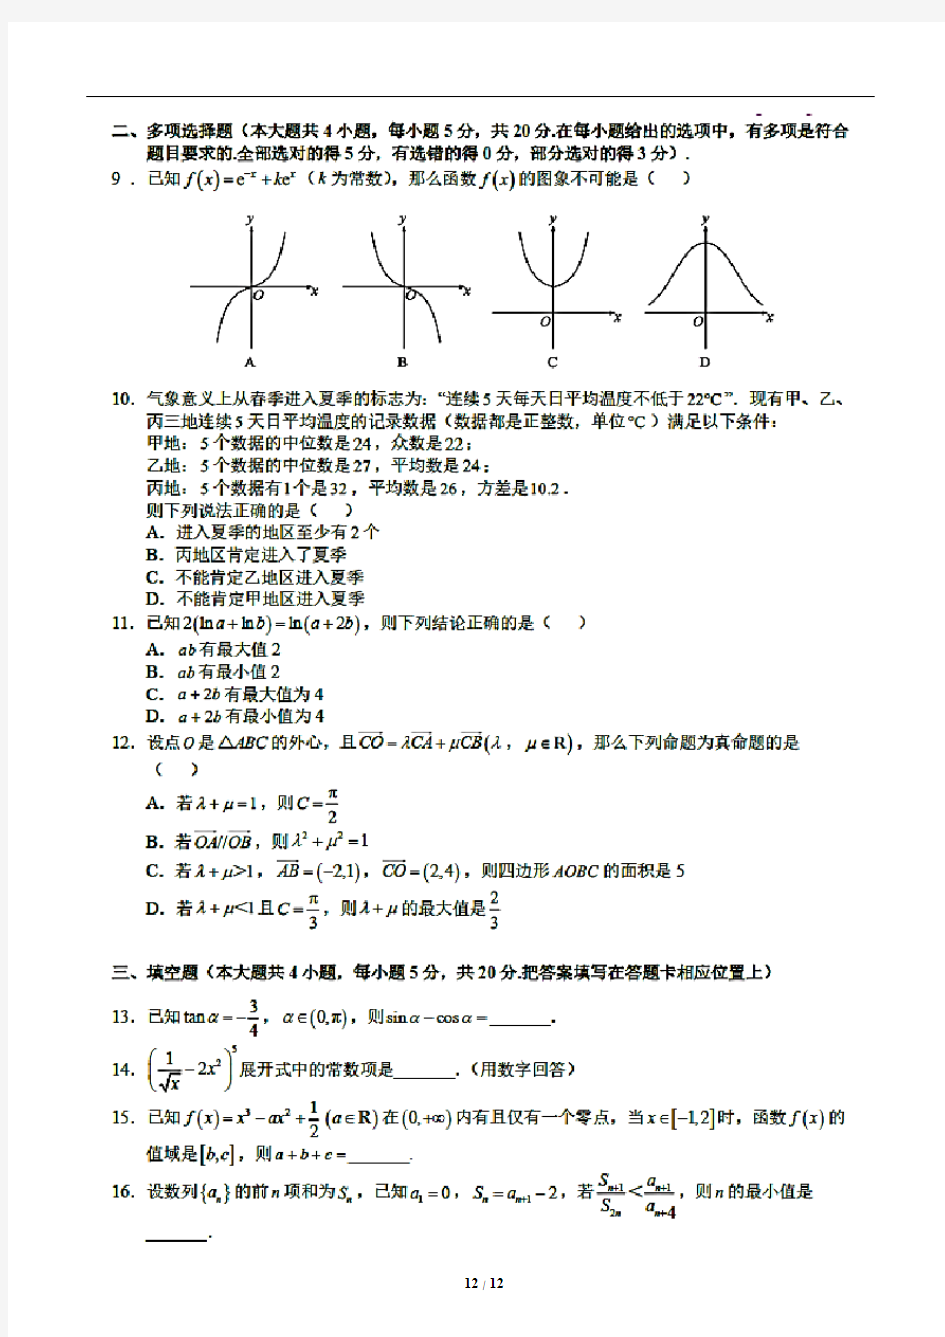 重庆巴蜀中学2021届高三高考适应性月考卷(三)数学试题(含答案解析)